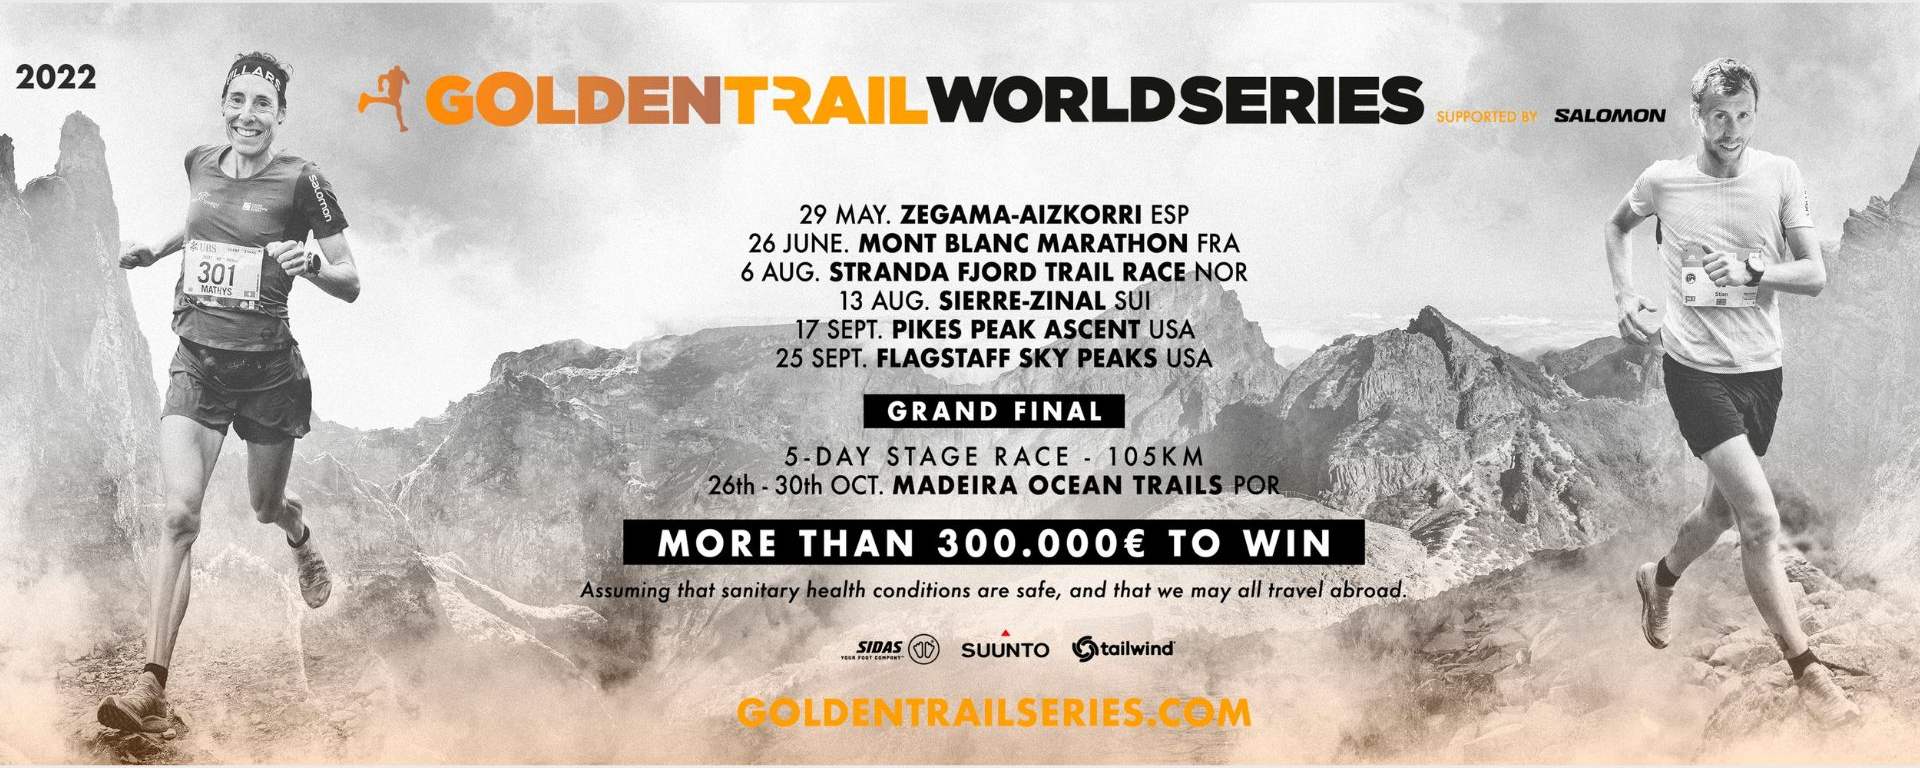 Golden Trail World Series 2022